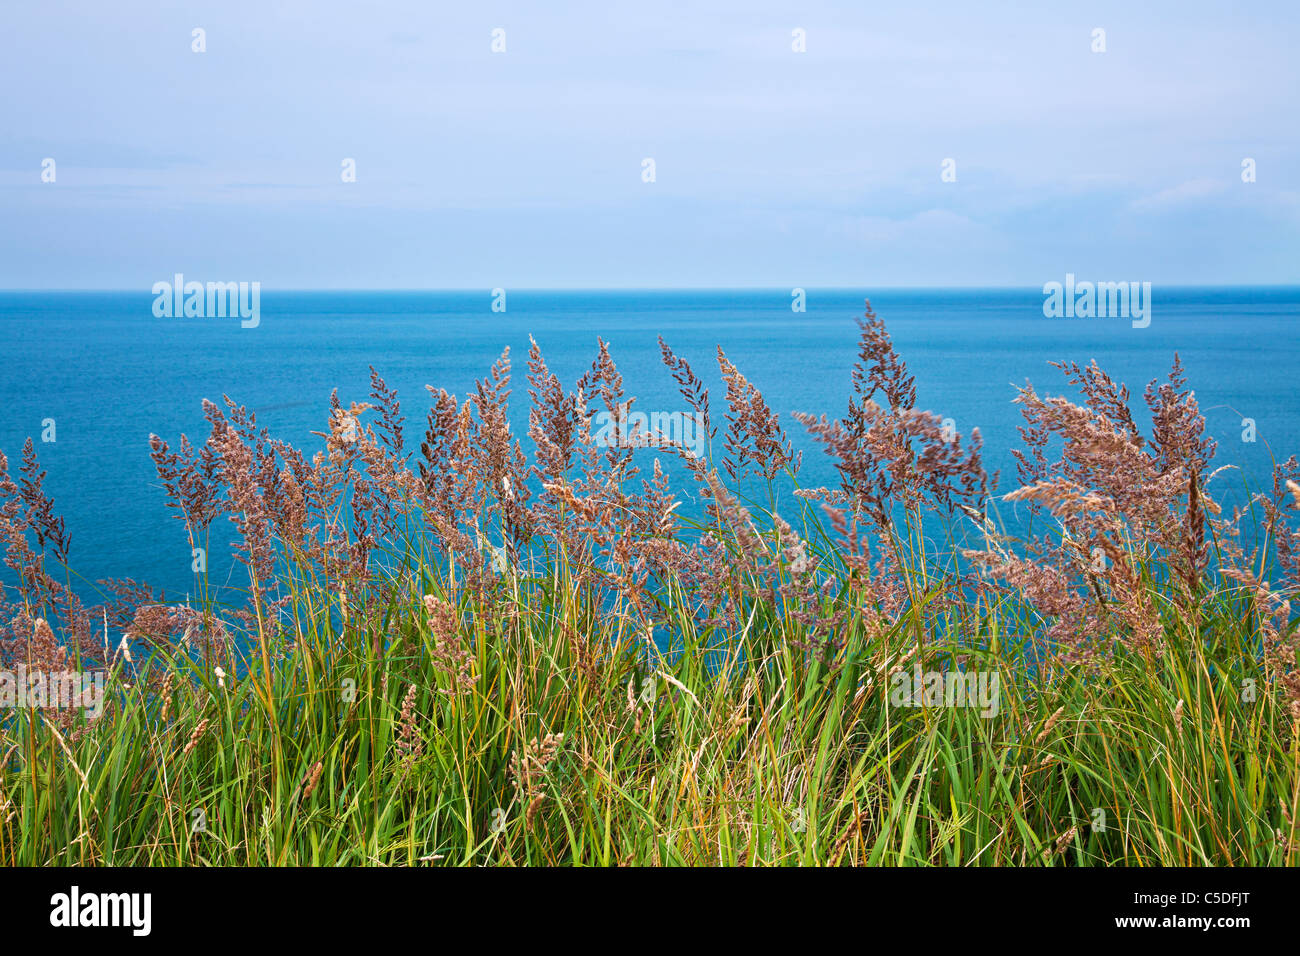 Una imagen simple de pastos costeros con el azul del mar y el horizonte más allá. Foto de stock